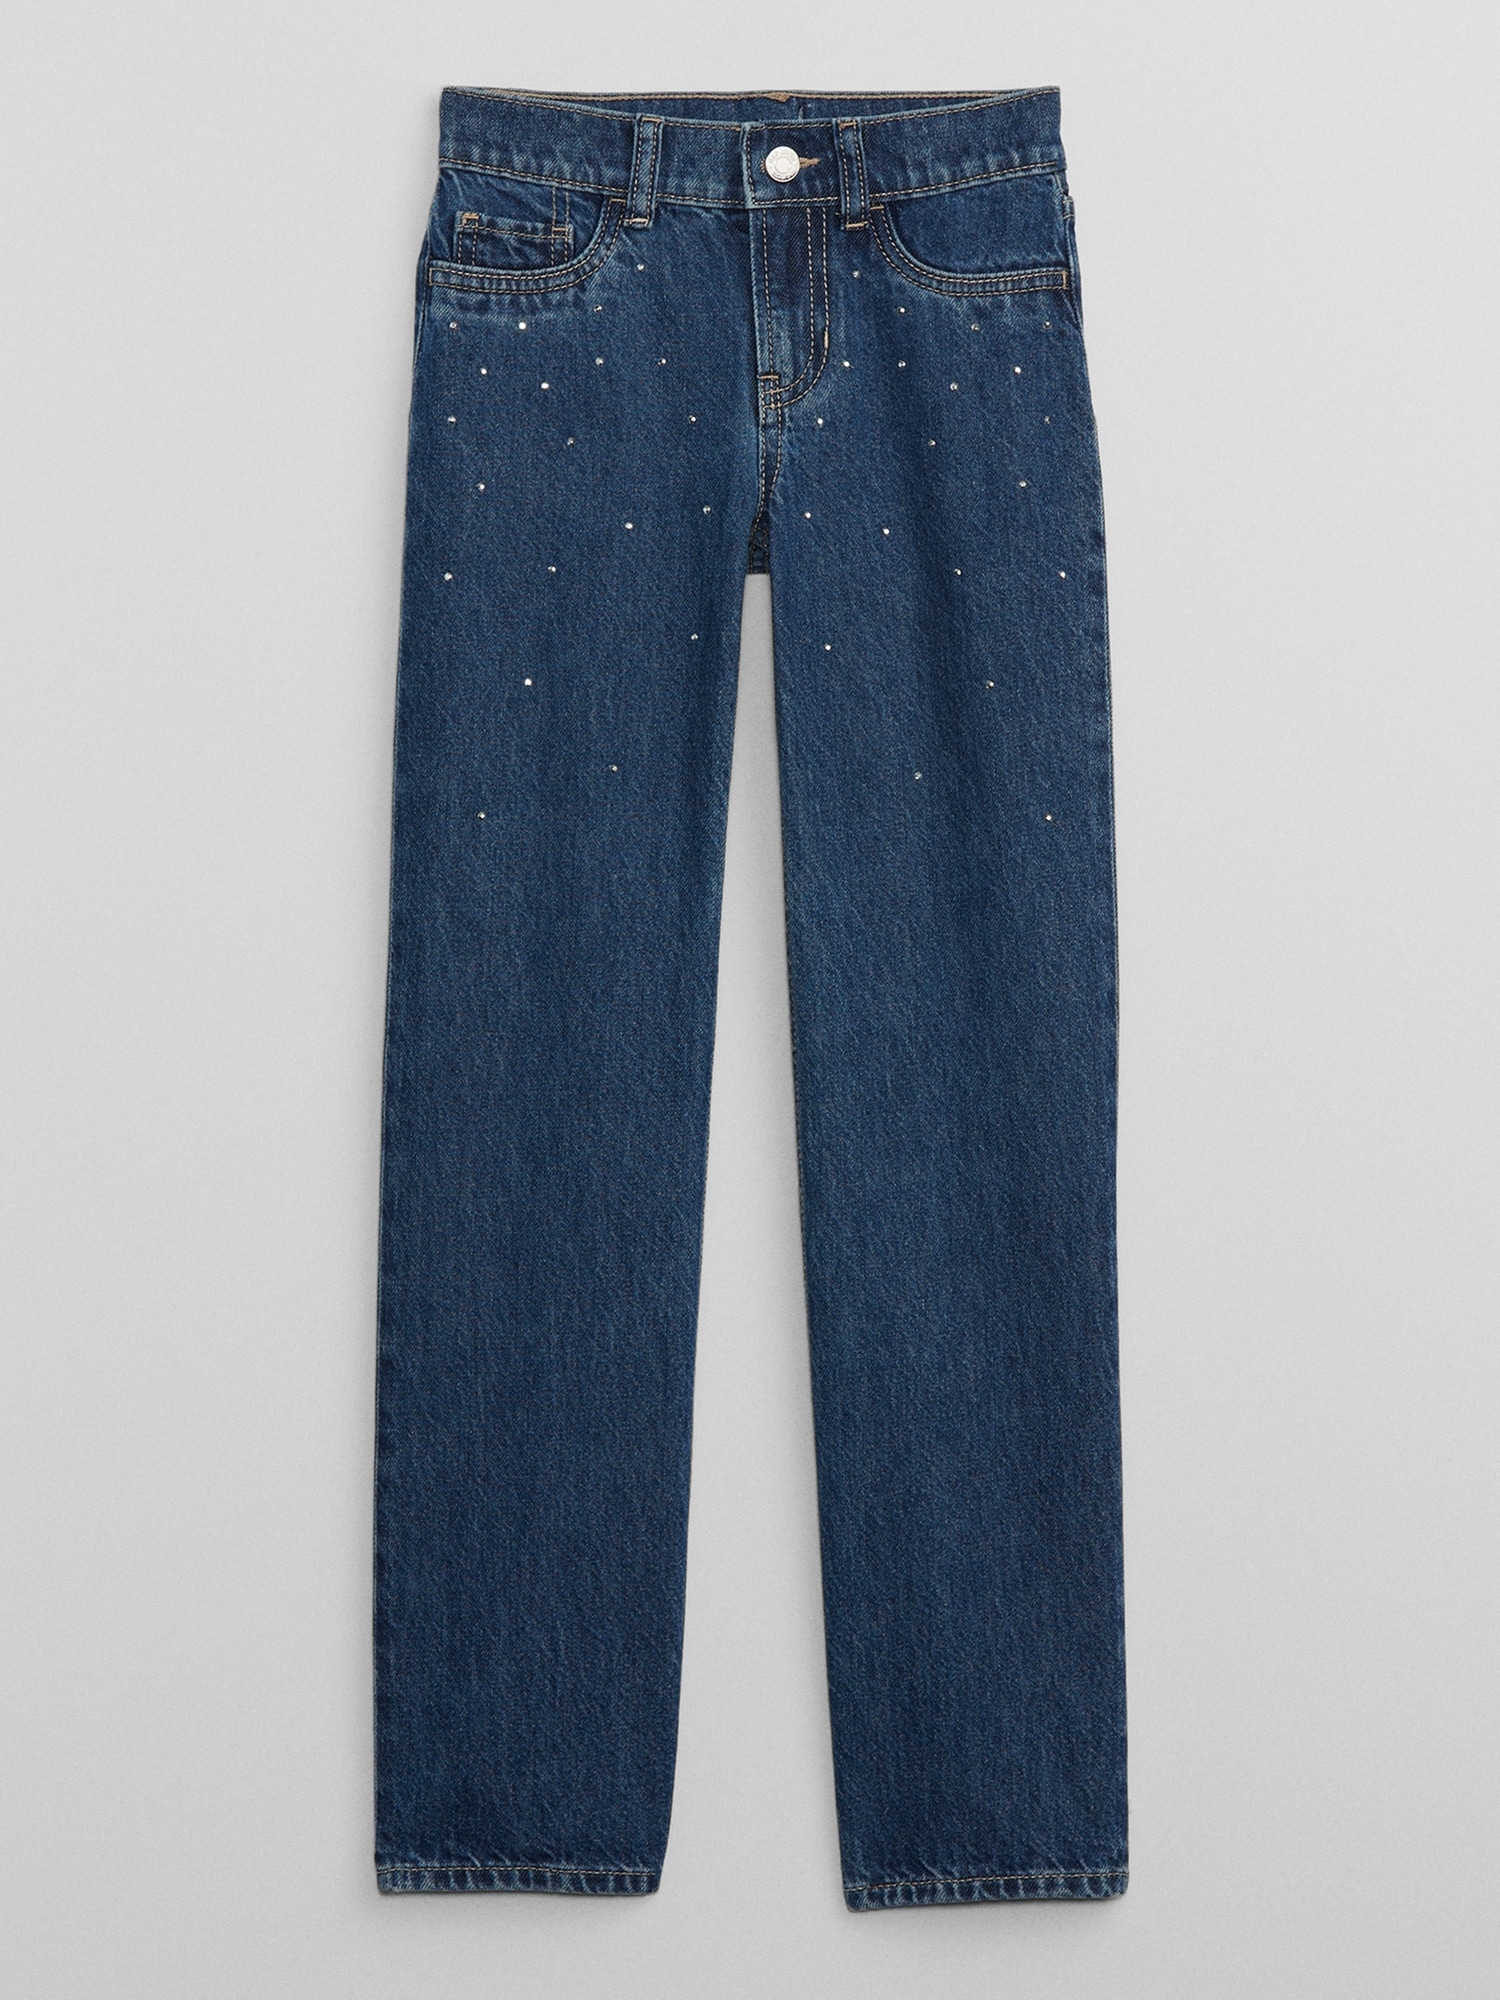 Gap gap mens jeans - Gem